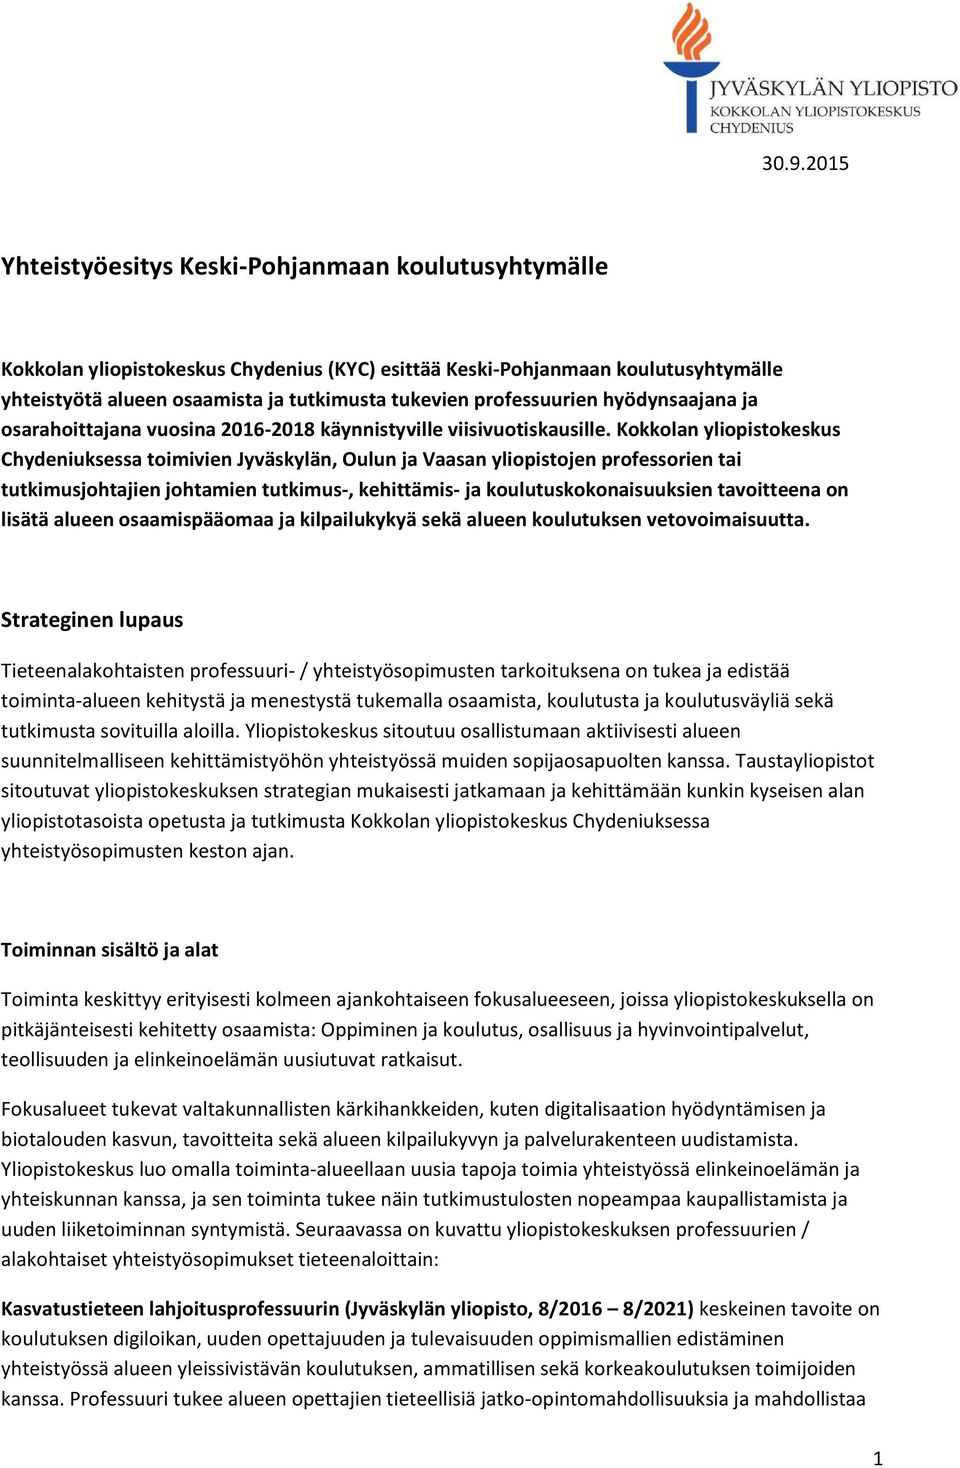 Kokkolan yliopistokeskus Chydeniuksessa toimivien Jyväskylän, Oulun ja Vaasan yliopistojen professorien tai tutkimusjohtajien johtamien tutkimus-, kehittämis- ja koulutuskokonaisuuksien tavoitteena